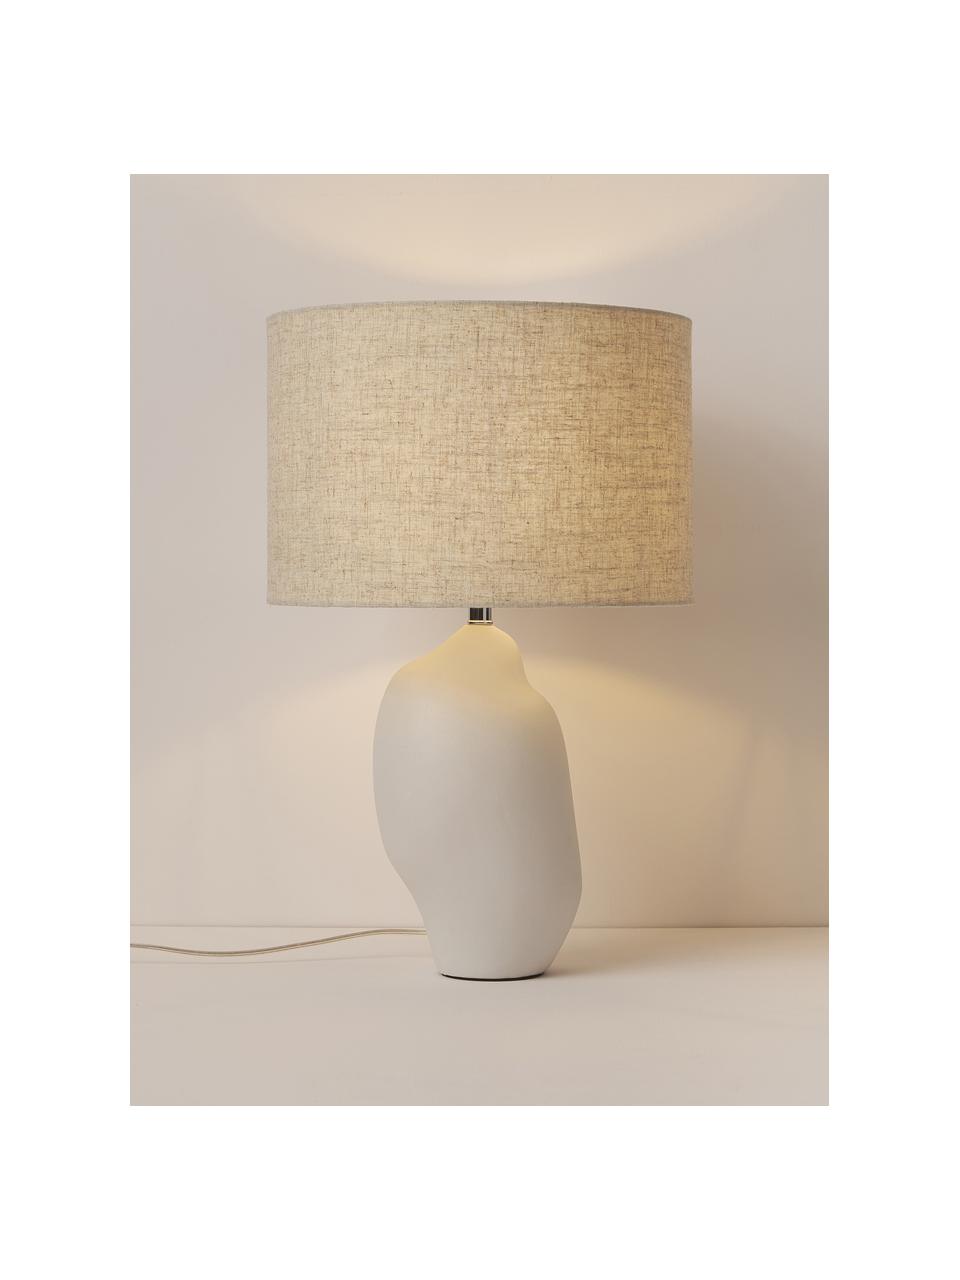 Grote keramische tafellamp Colett in organische vorm, Lampenkap: linnenmix, Lampvoet: keramiek, Beige, gebroken wit, Ø 35 x H 53 cm